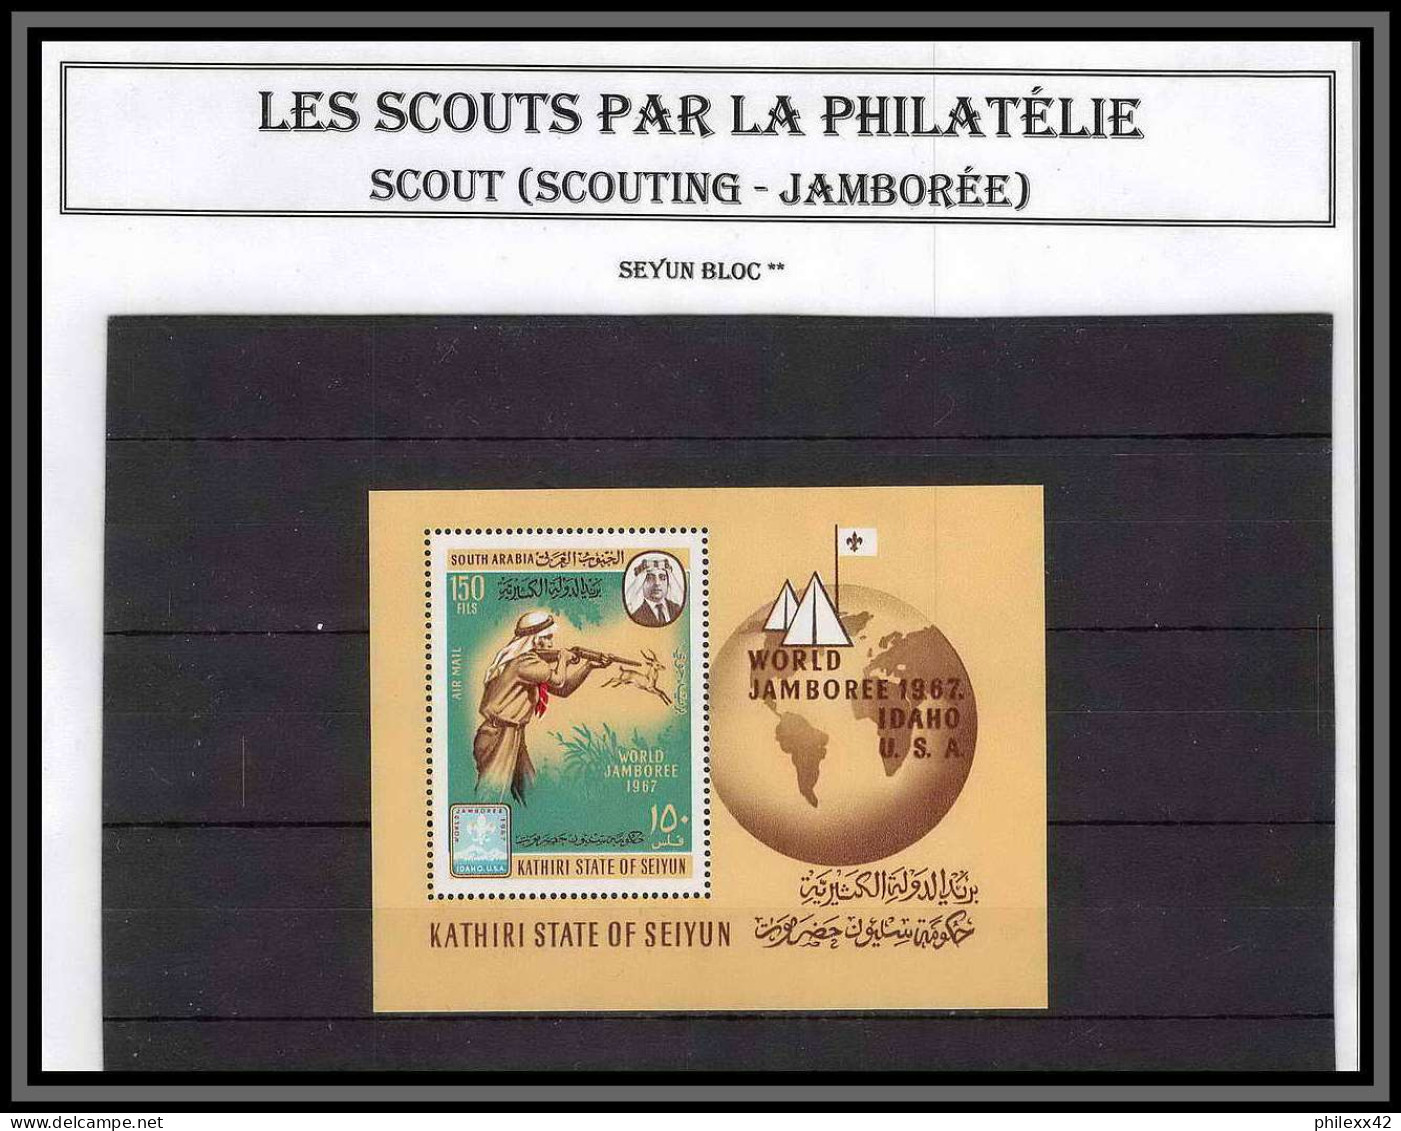 COLLECTION thématique Scouts (scouting - jamboree) neuf ** mnh forte cote tb état